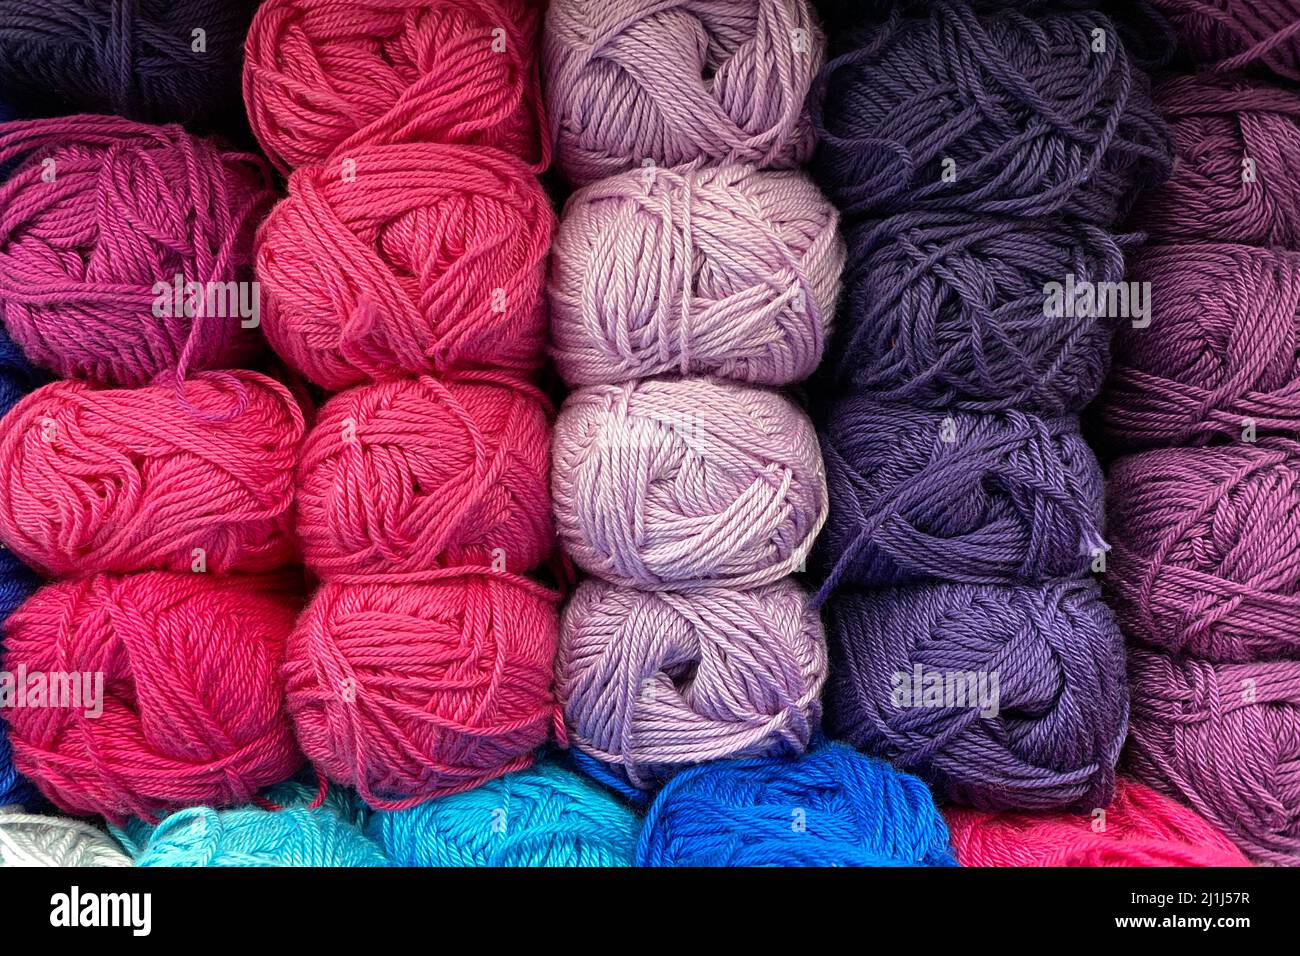 pink-purple range of wool yarn. multi colored skeins of wool Stock Photo